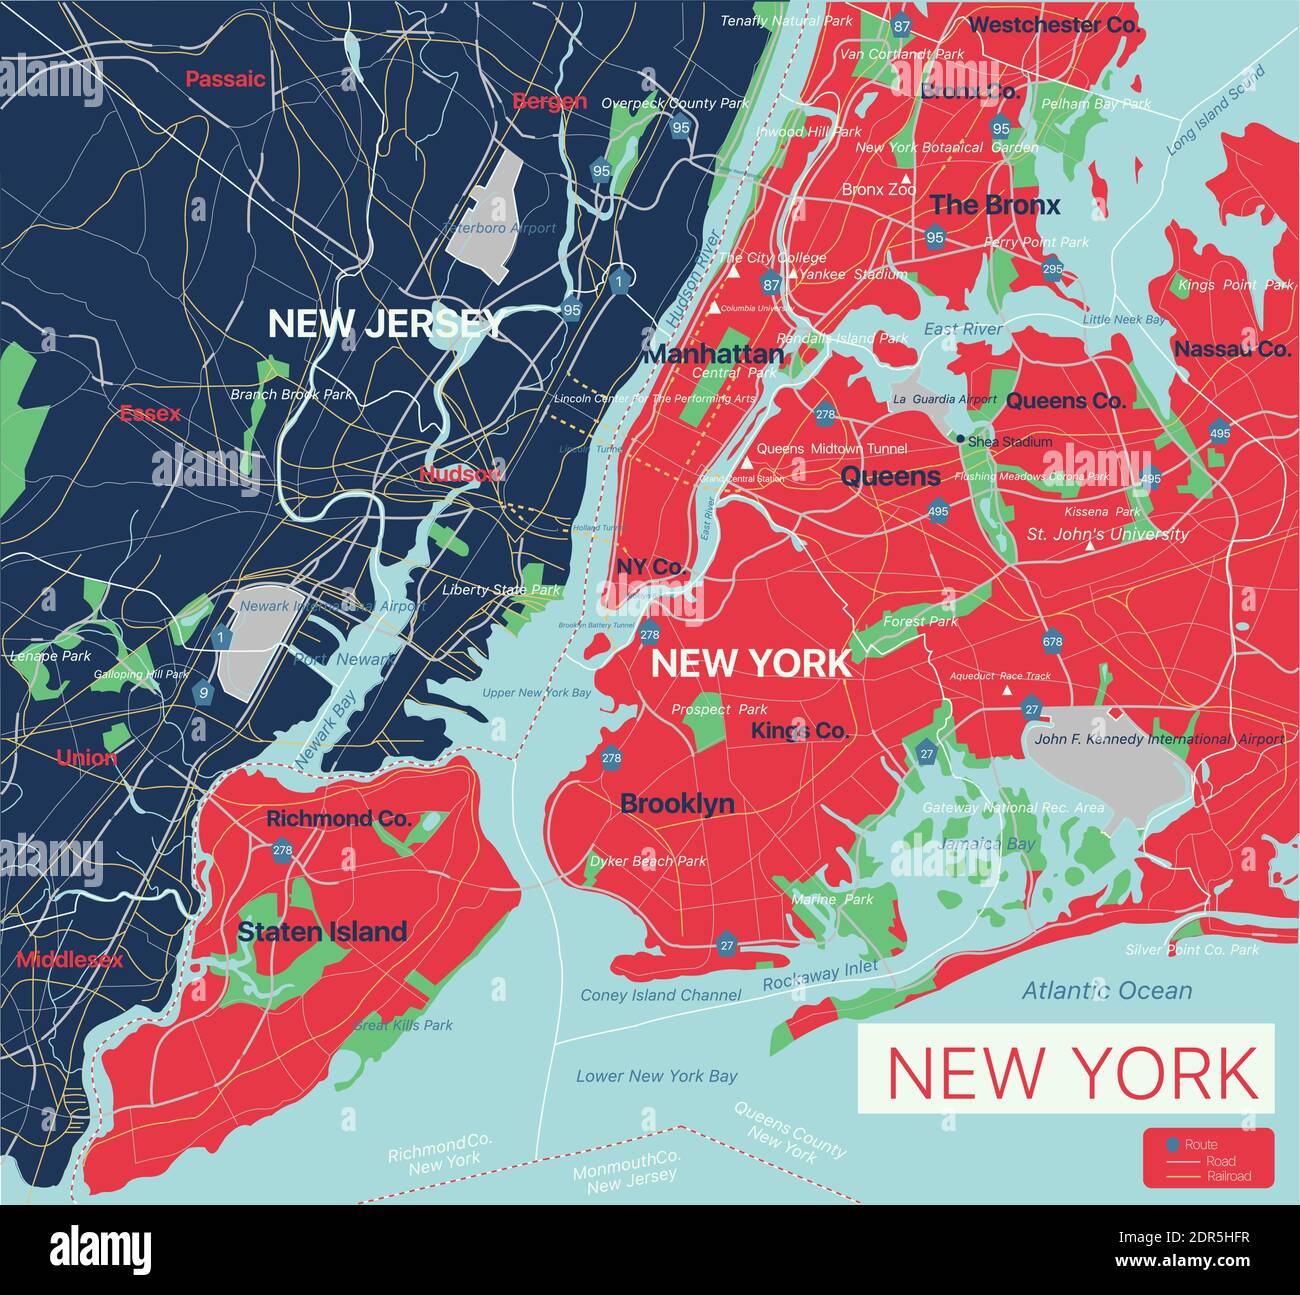 New York mappa dettagliata modificabile con città e città, siti geografici, strade, ferrovie, interstatali e autostrade degli Stati Uniti. File vettoriale EPS-10, trend Illustrazione Vettoriale